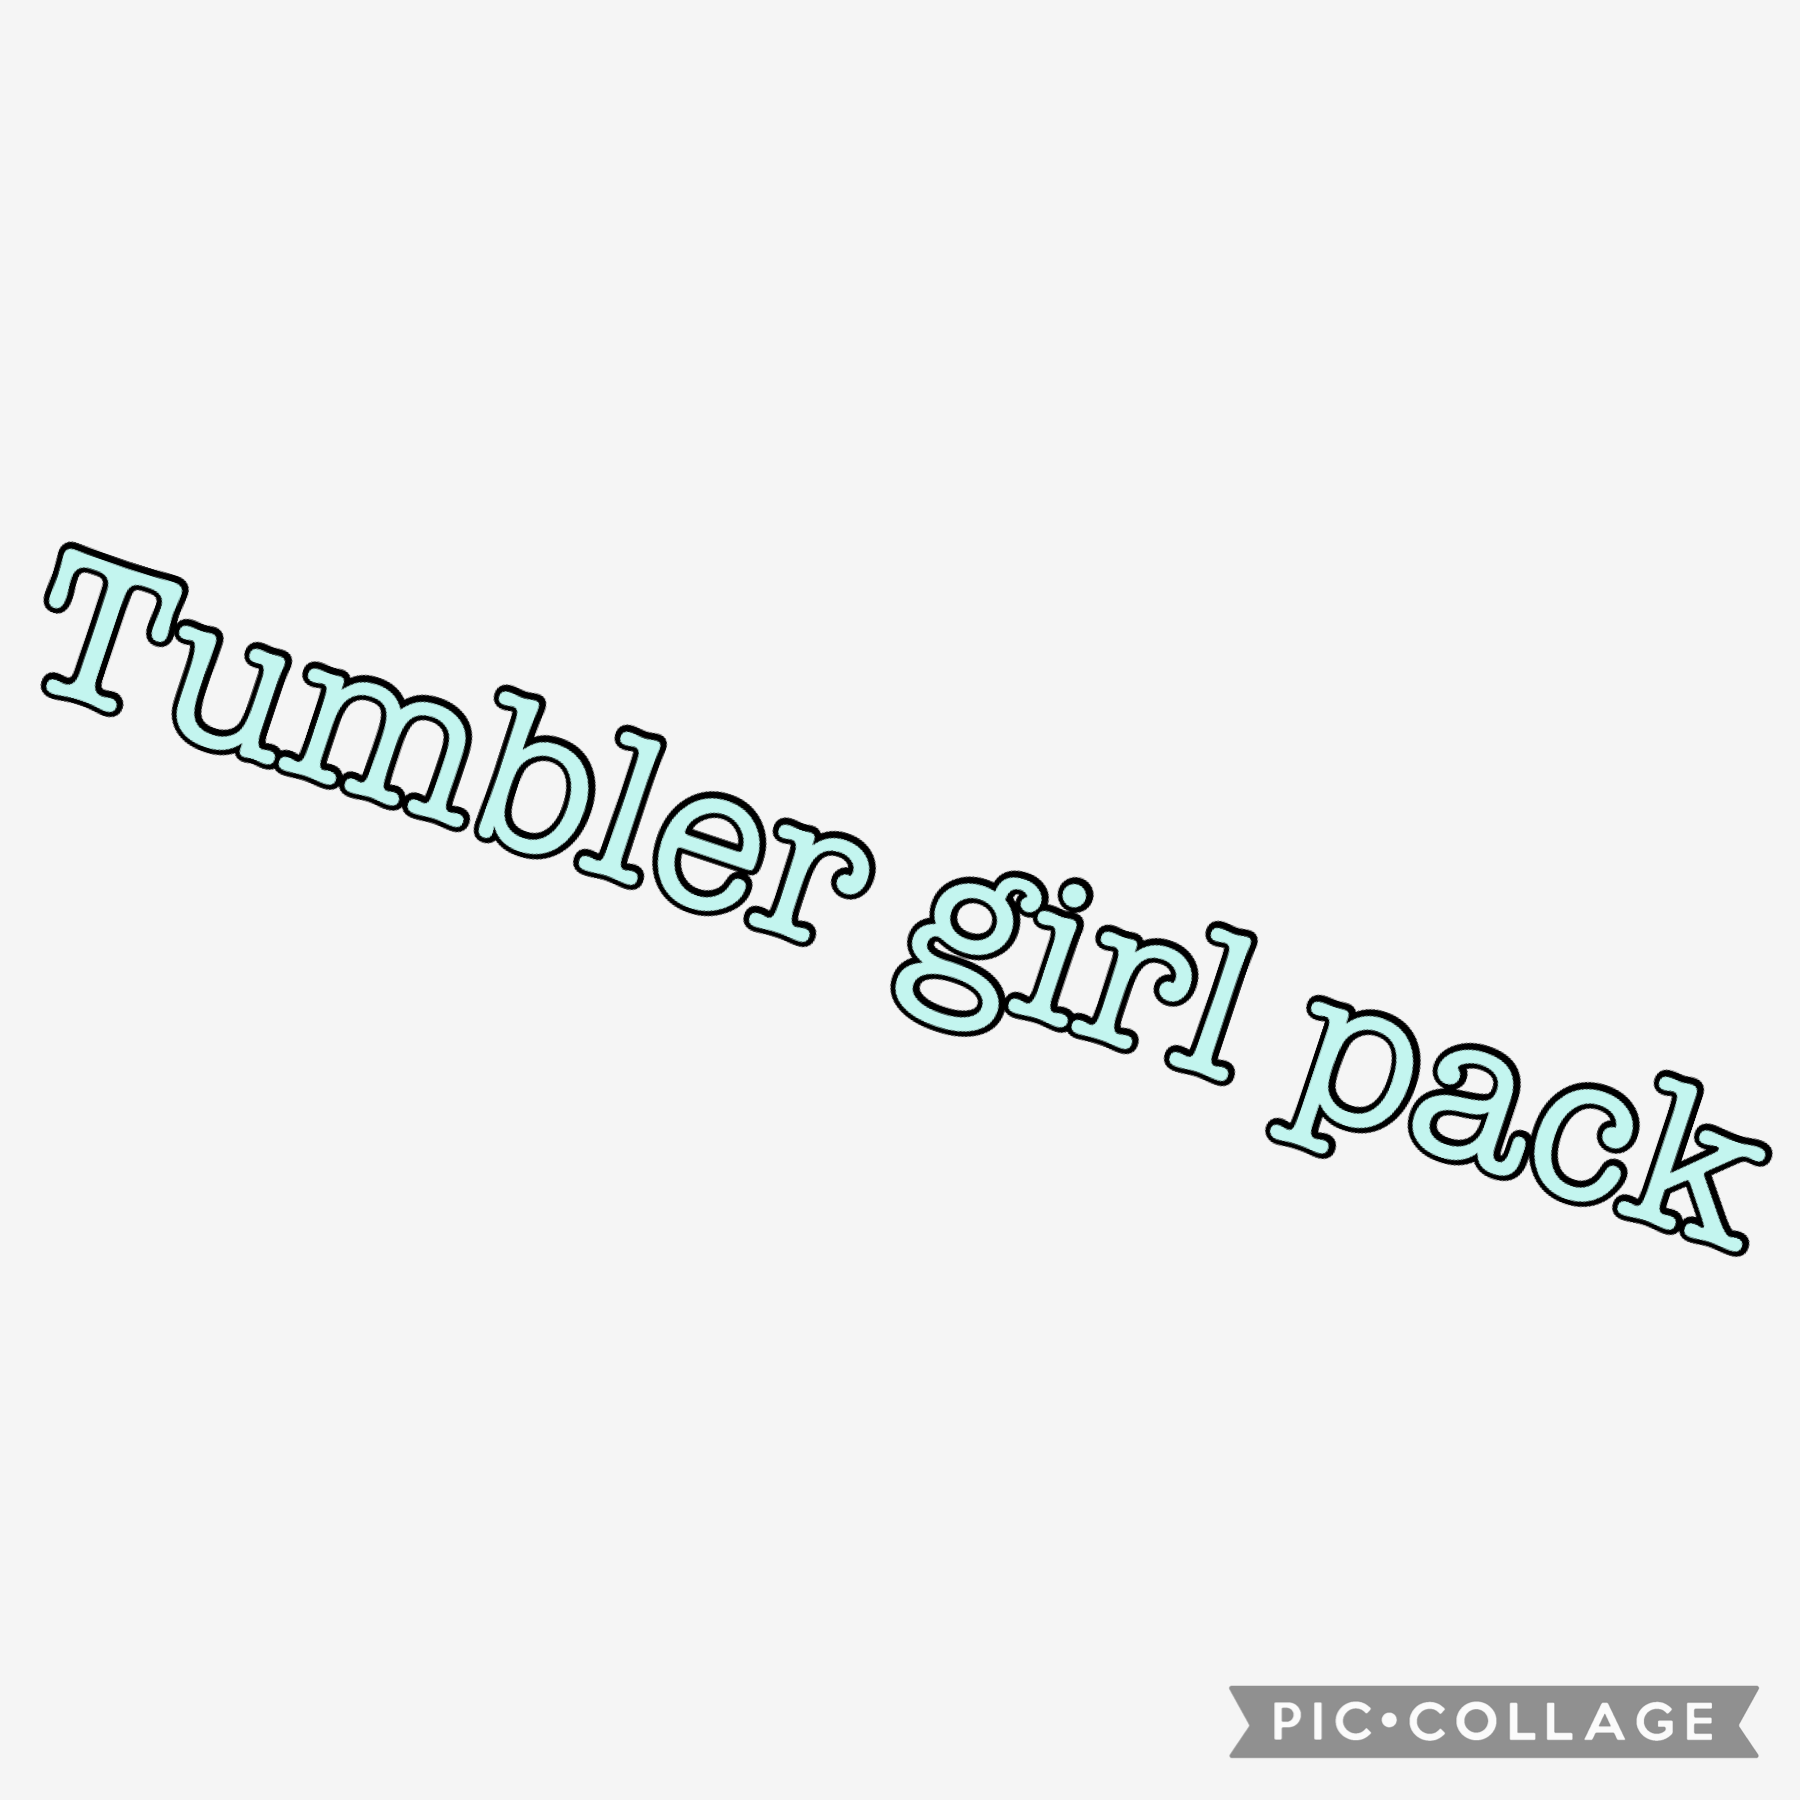 ♾☯️🌹Tap🌹☯️♾
Tumbler girl pack 